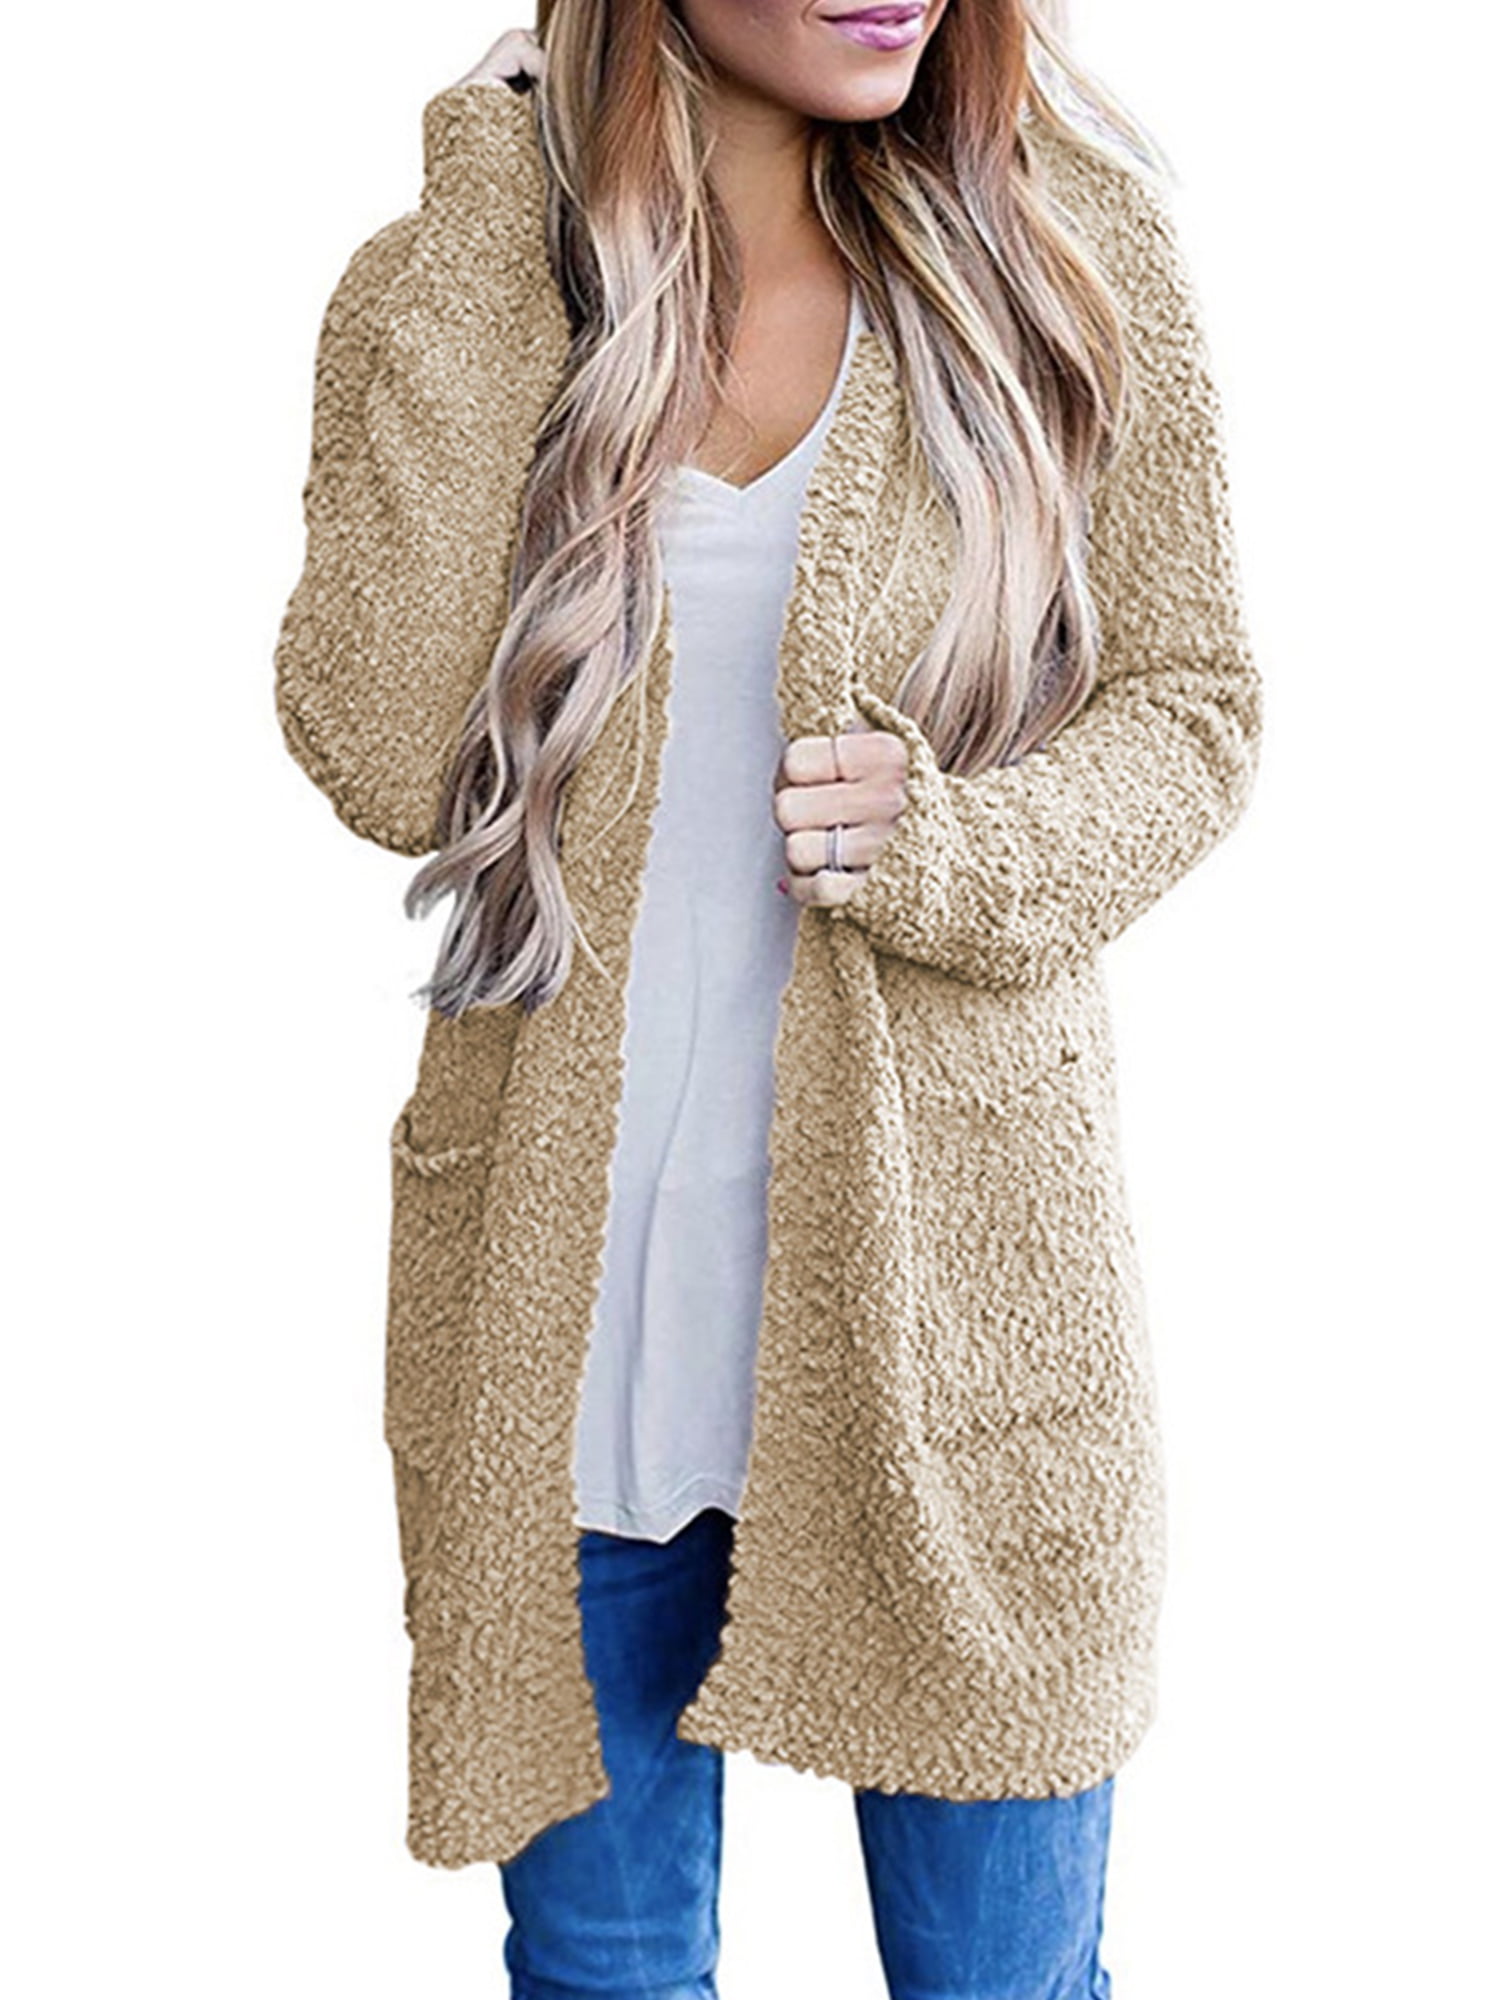 Malaven Women’s Winter Fluffy Fuzzy Open Front Cardigan Jacket Coat Outwear with Pockets 